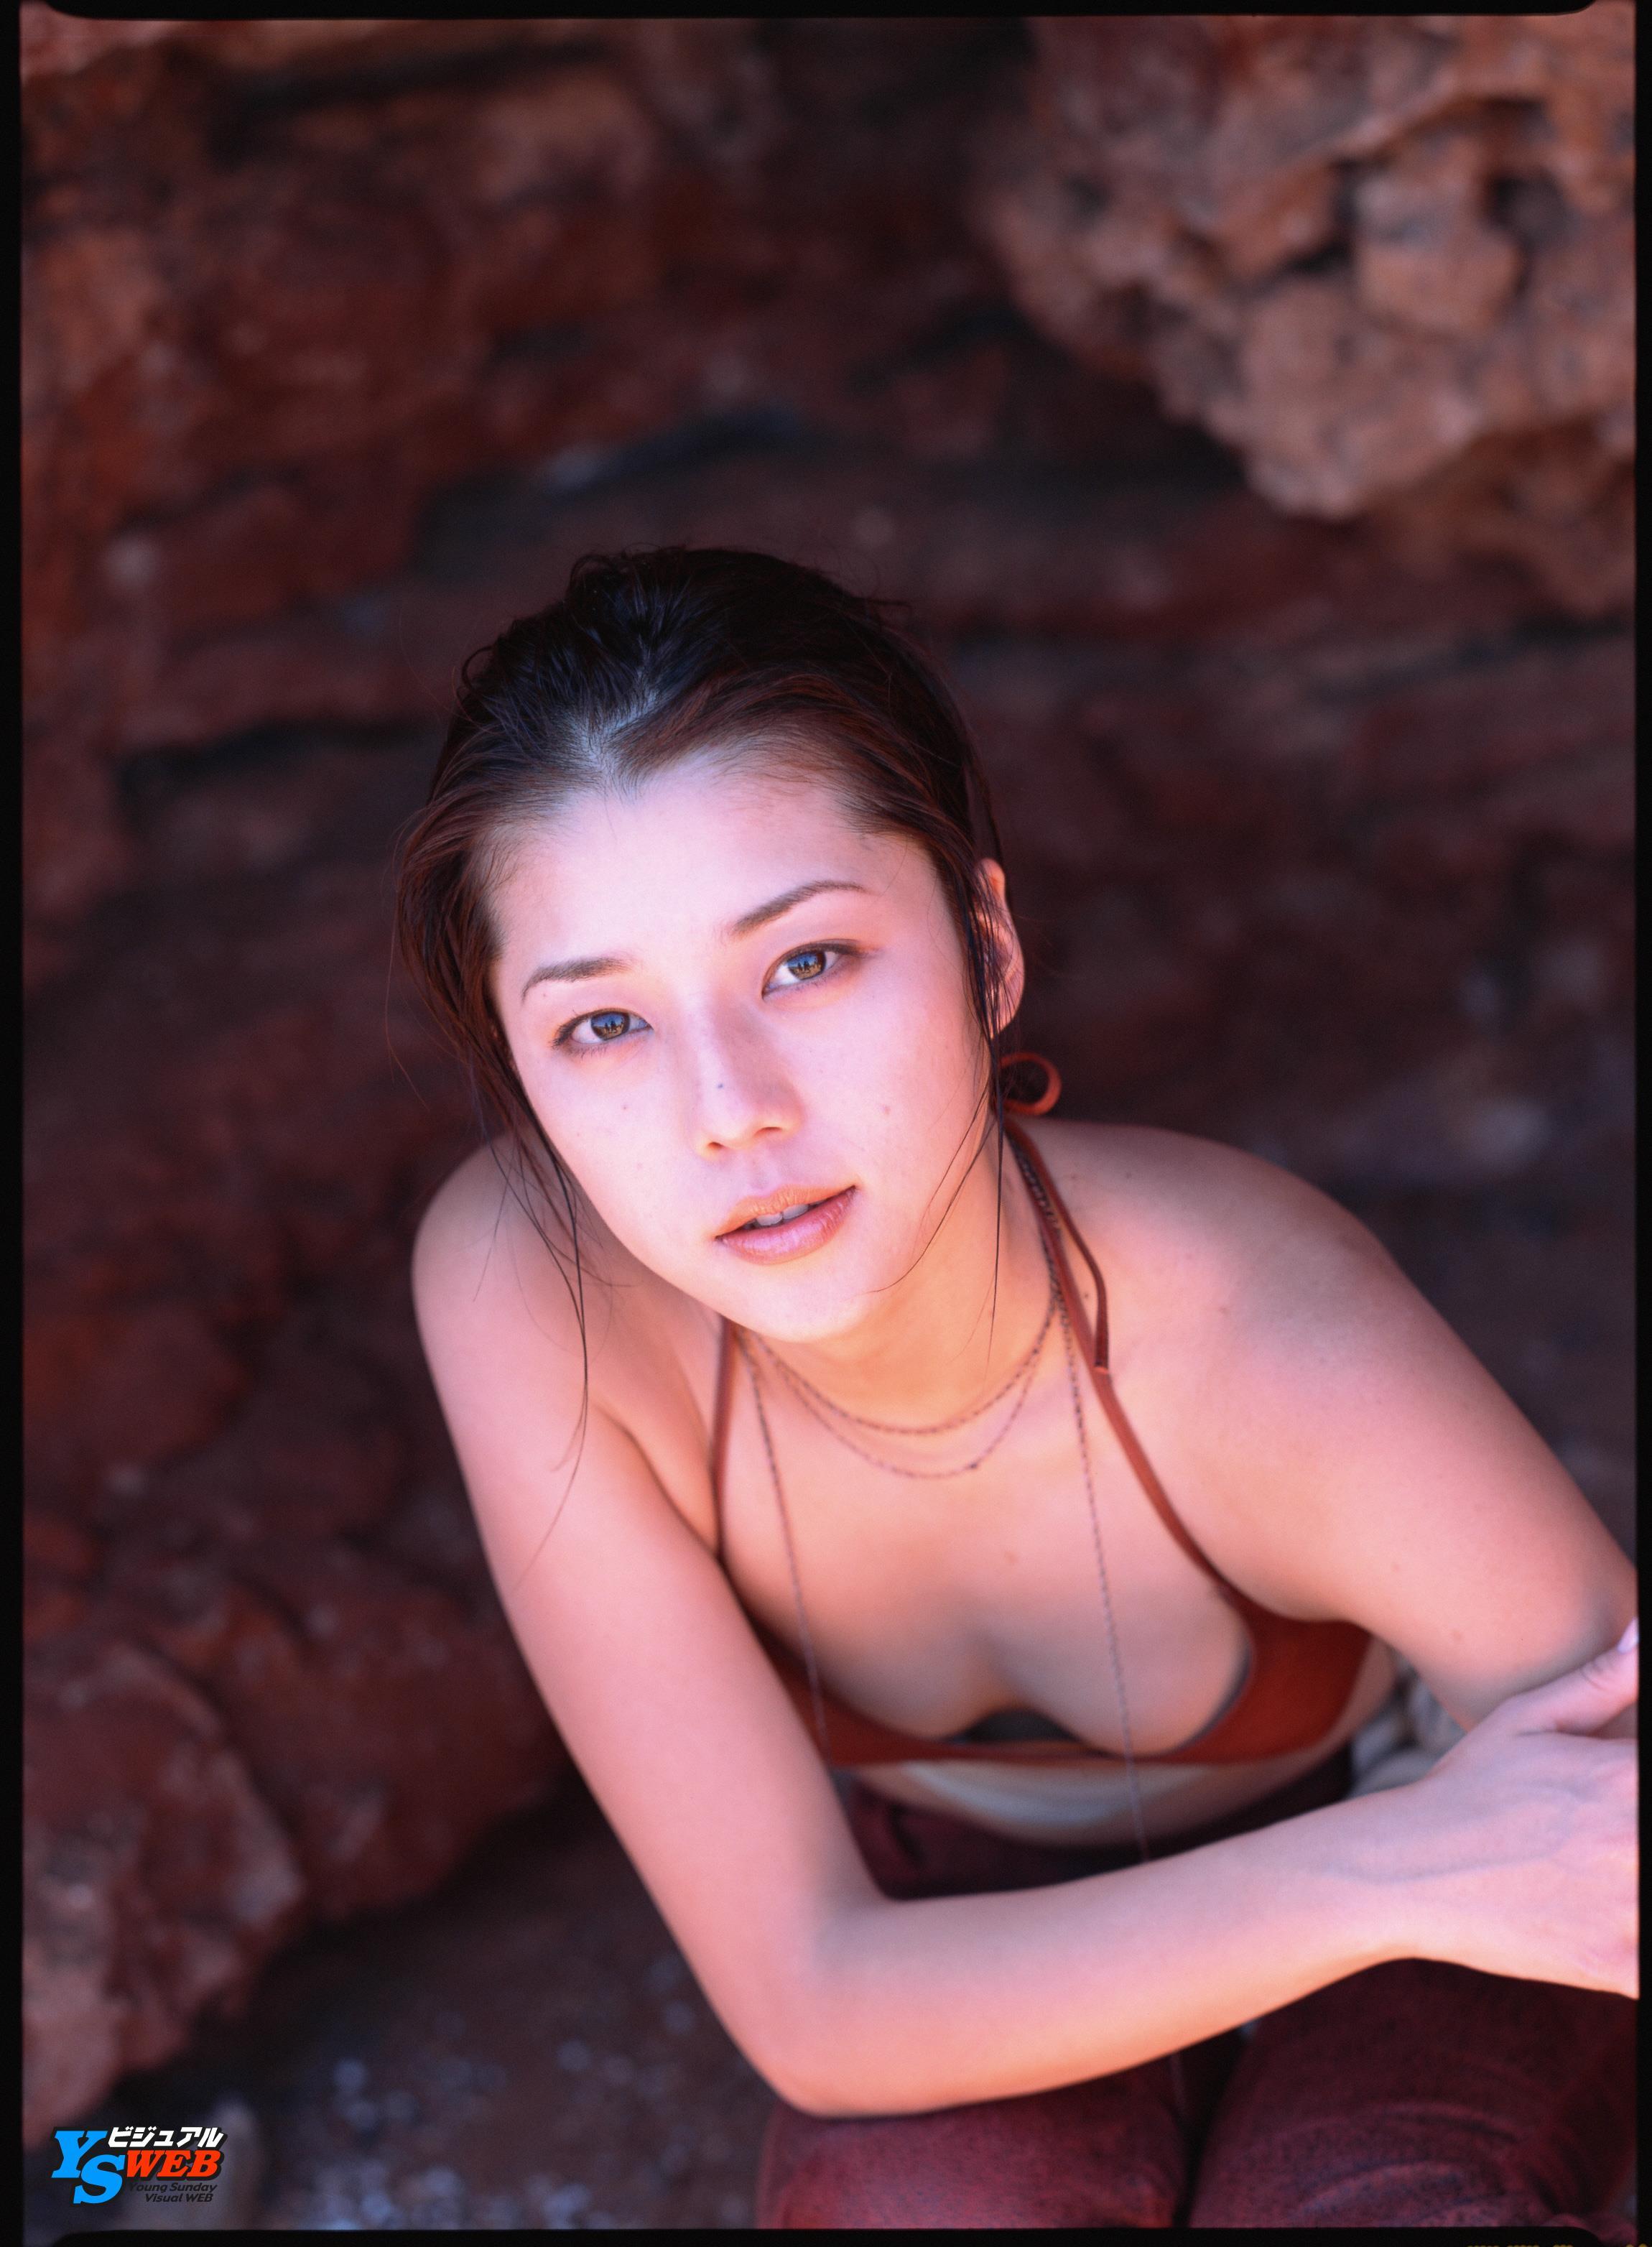 [YS Web]Vol.013 よしおかみほ(吉岡美穂，Miho Yoshioka)性感内衣与比基尼泳装写真集,